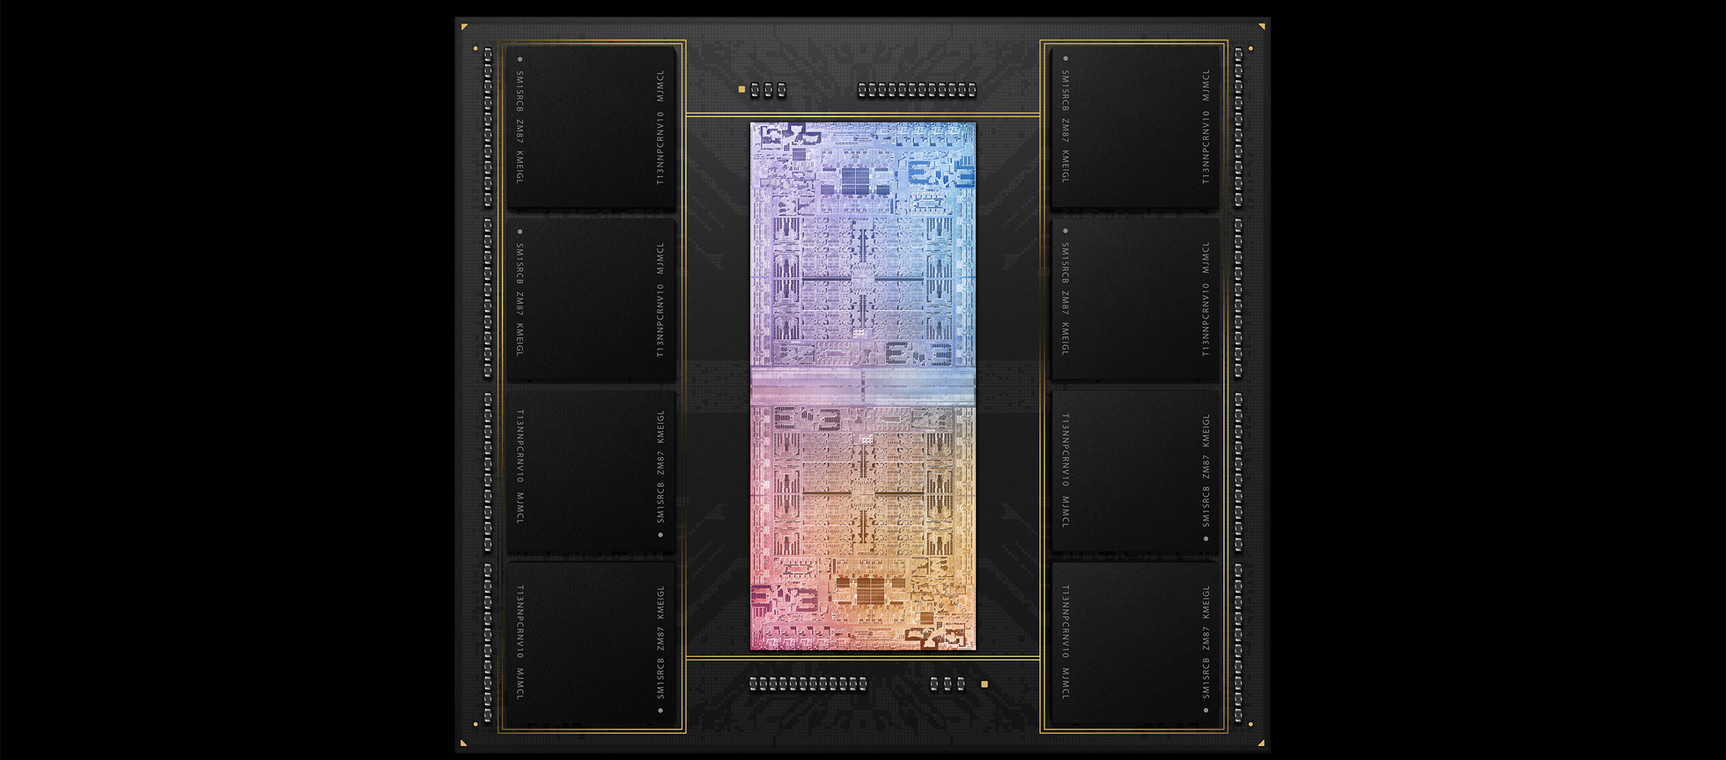 Do budowy procesorów Apple są wykorzystywane najbardziej zaawansowane metody produkcji i pakowania krzemowych chipów.